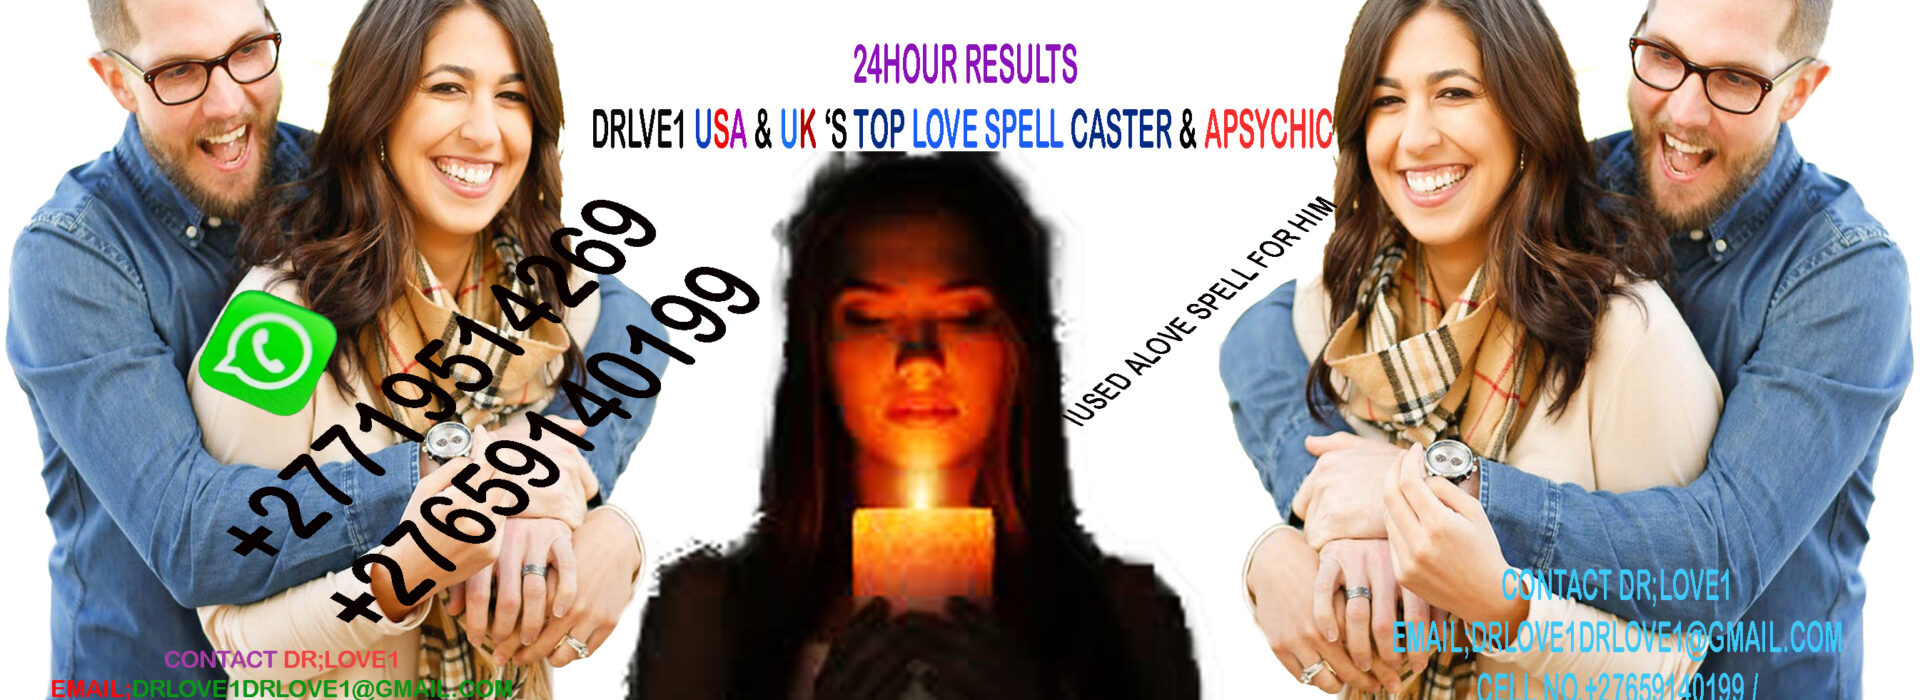 marriage and bonding spells Legit Love Spell Cater on line love spell caster in uk